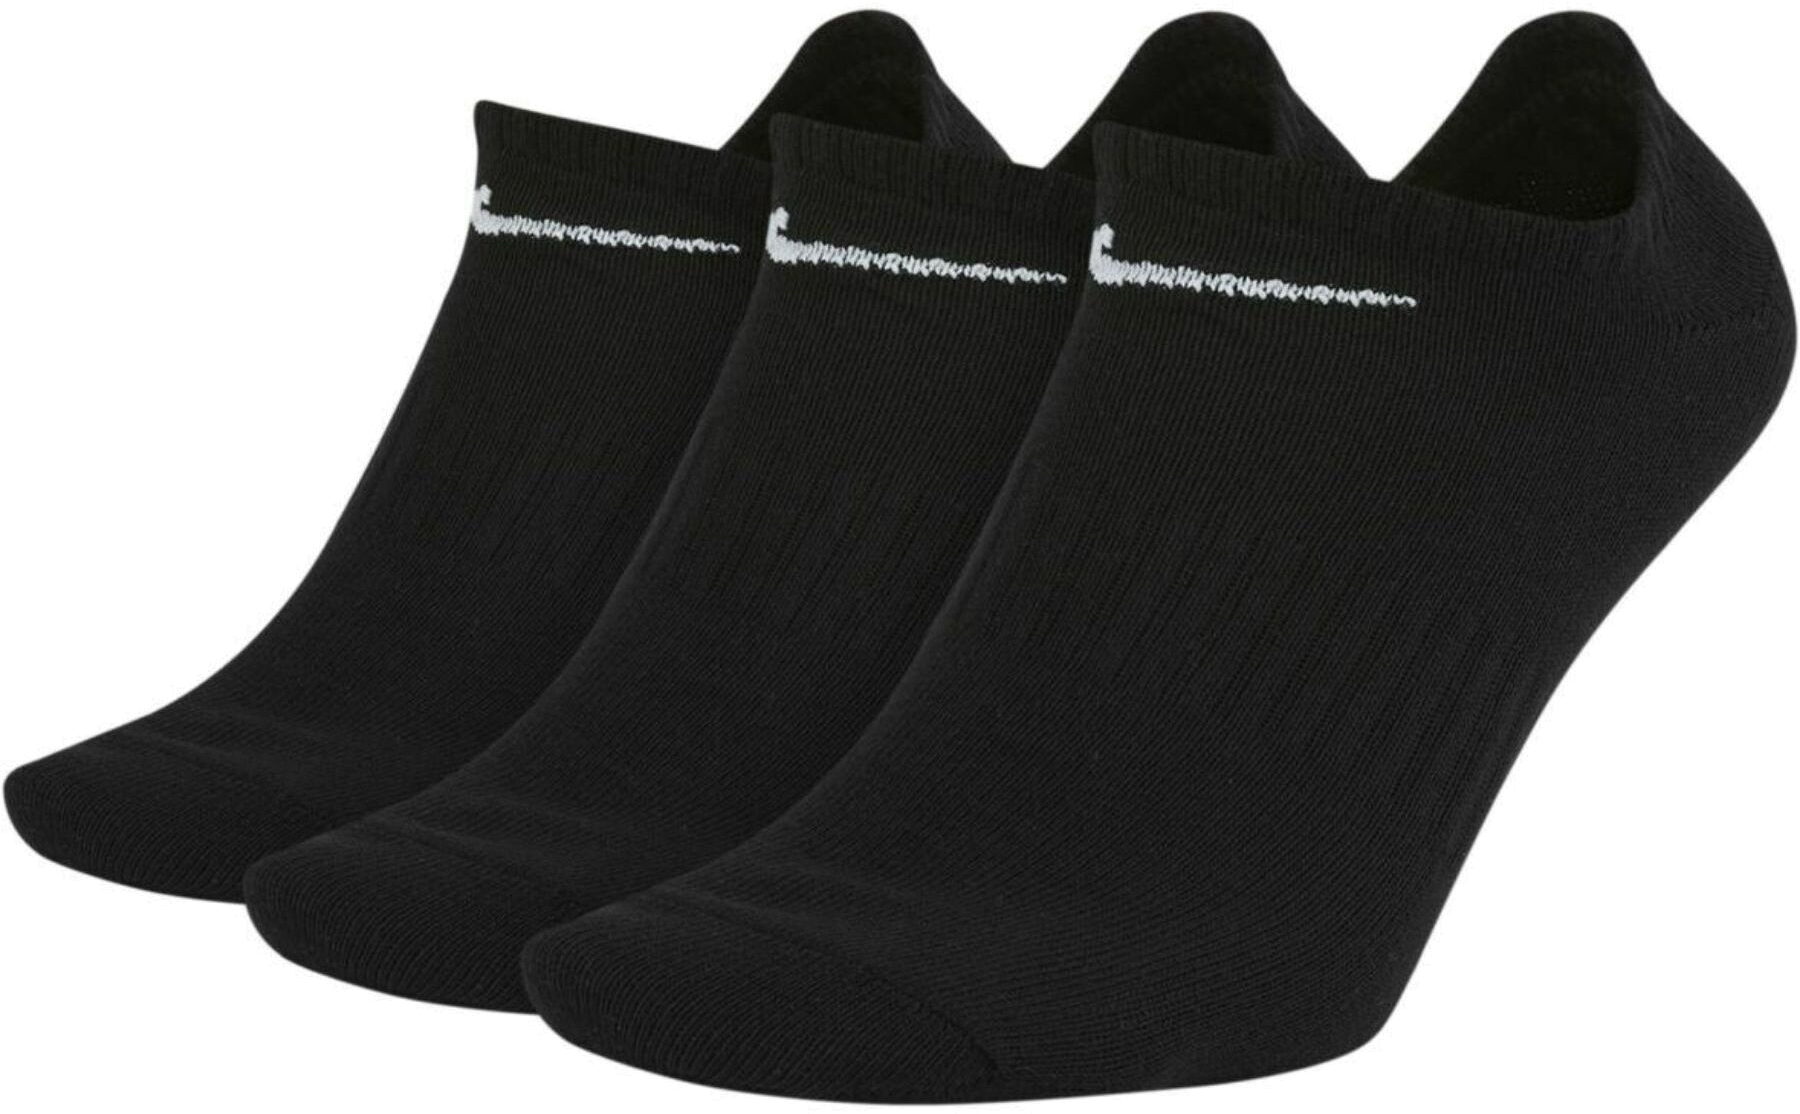 Комплект носков унисекс Nike Everyday Lightweight No-Show черных M 3 пары